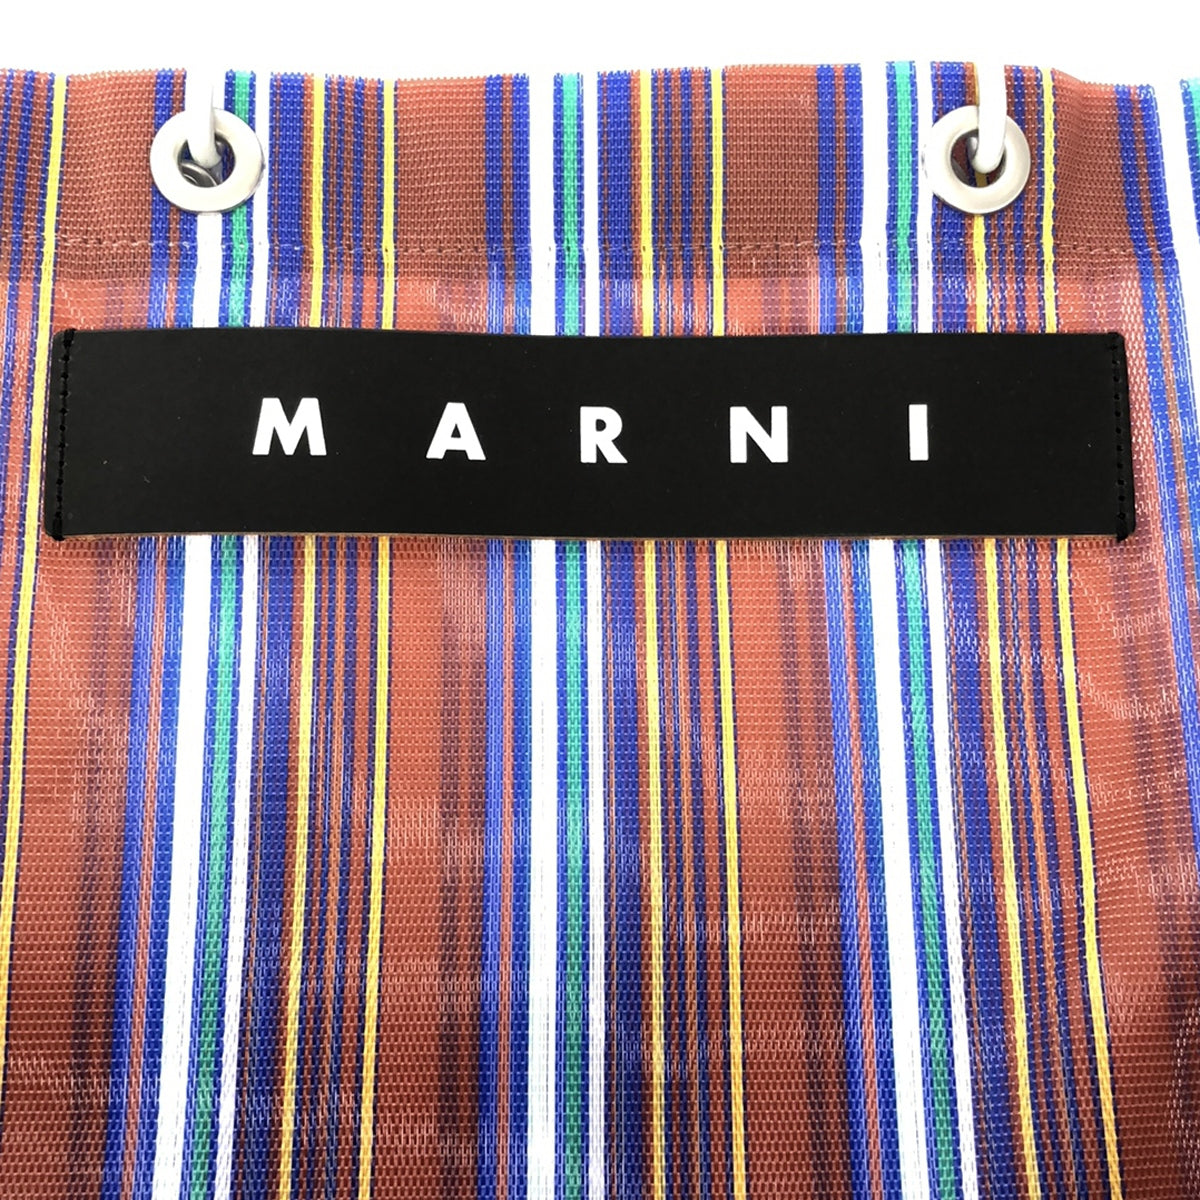 MARNI / マルニ | フラワーカフェ ショッピングトートバッグ |